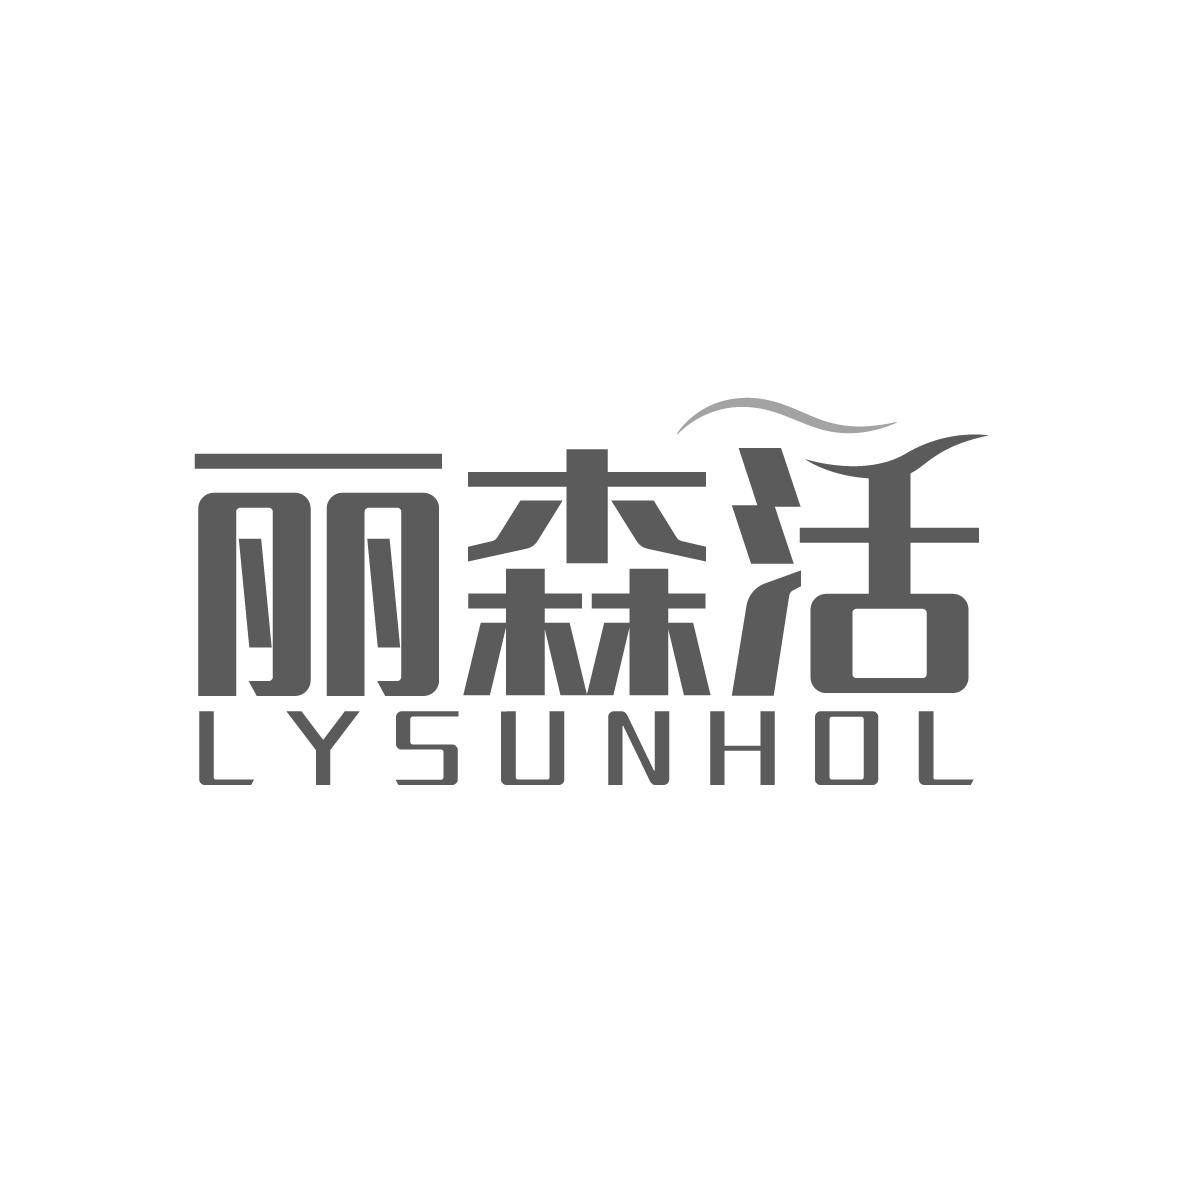 转让商标-丽森活 LYSUNHOL